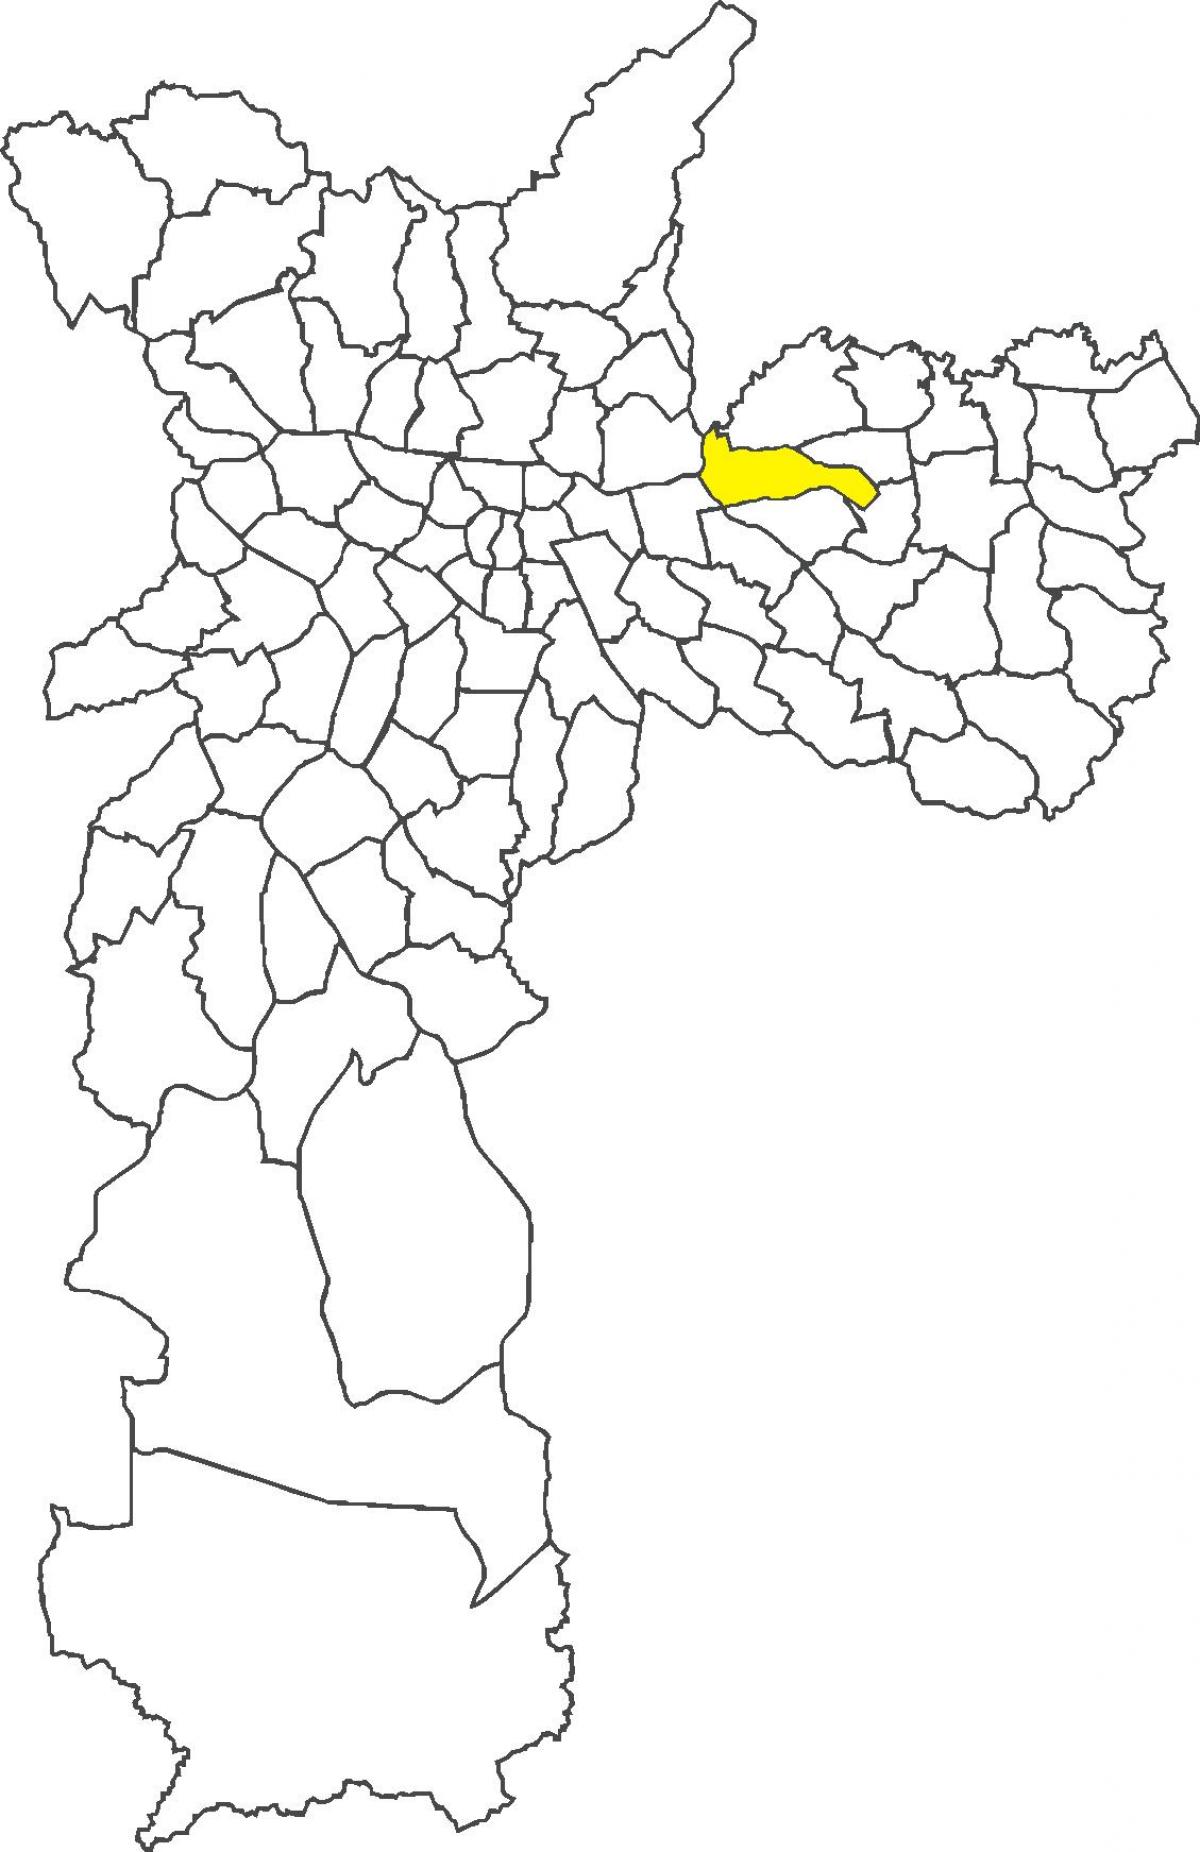 মানচিত্র Penha জেলা